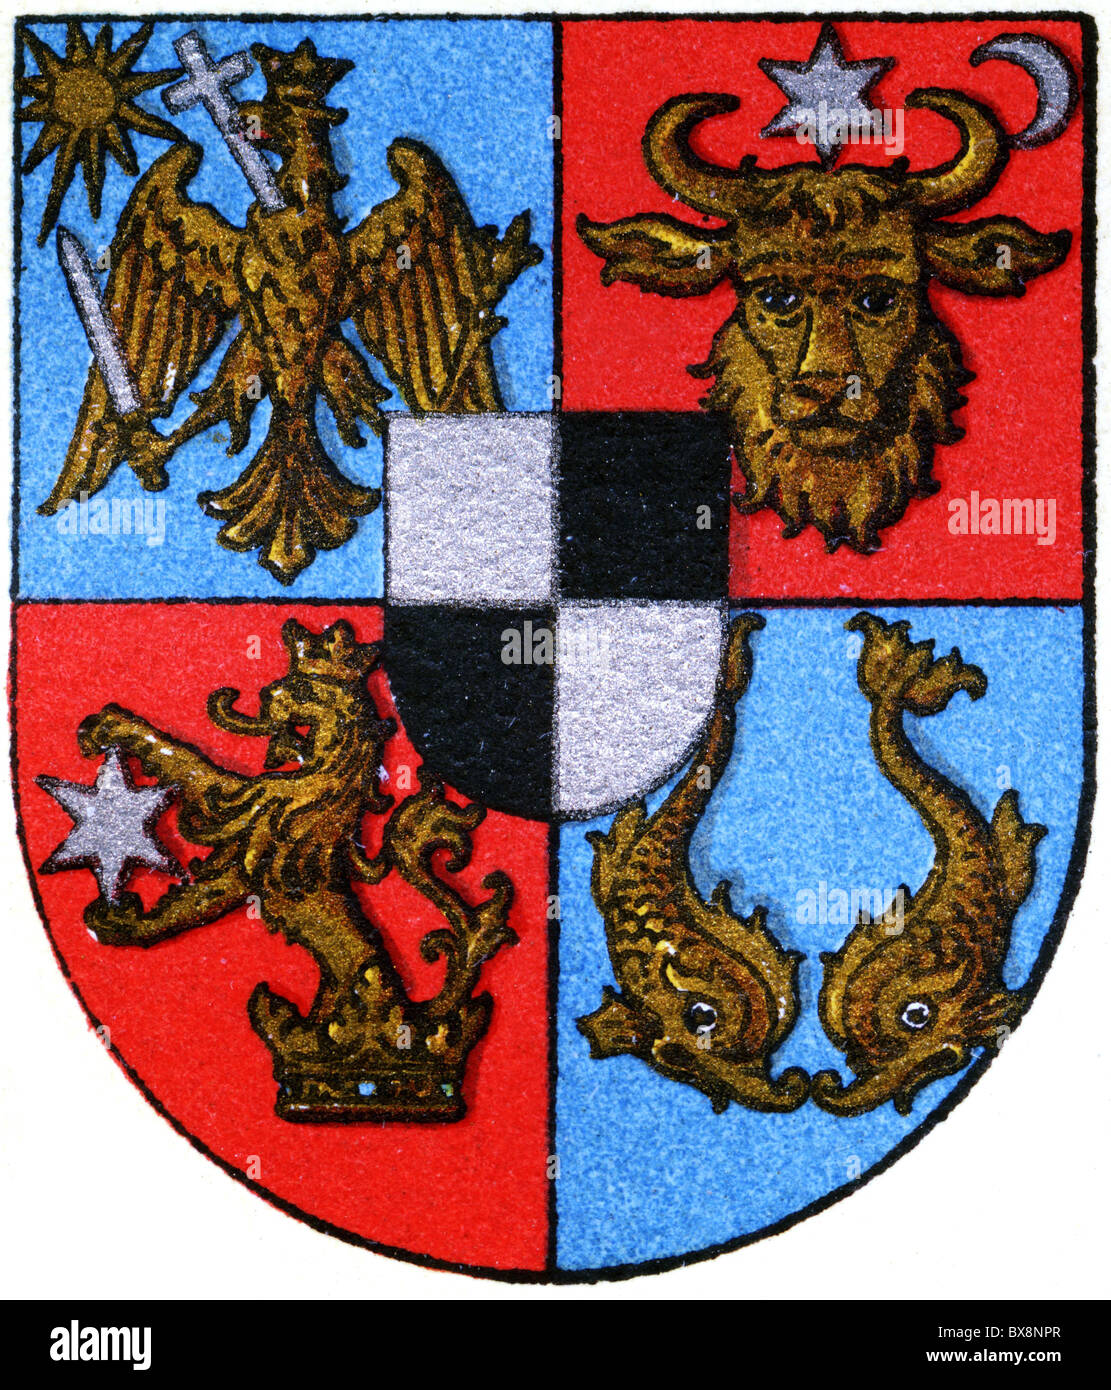 Heraldy, Wappen, Rumänien, Staatswappen, Farblithographie, Meyers Enzyklopädie, 1908, Zusatz-Rechte-Clearenzen-nicht lieferbar Stockfoto